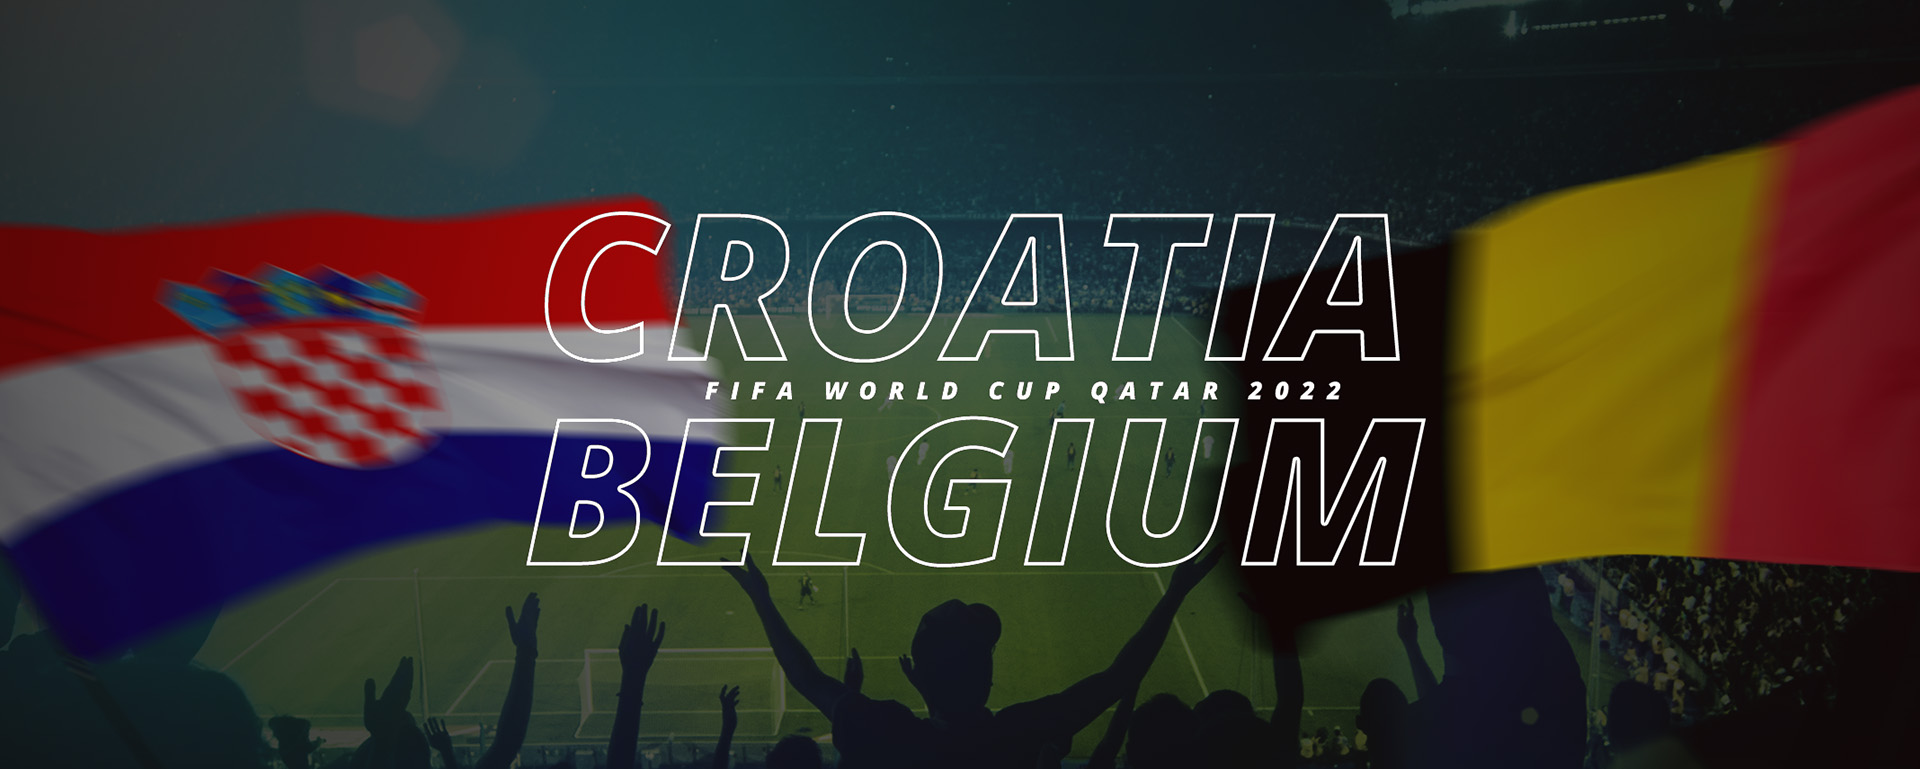 CTOATIA VS BELGIUM | FIFA WORLD CUP QATAR 2022